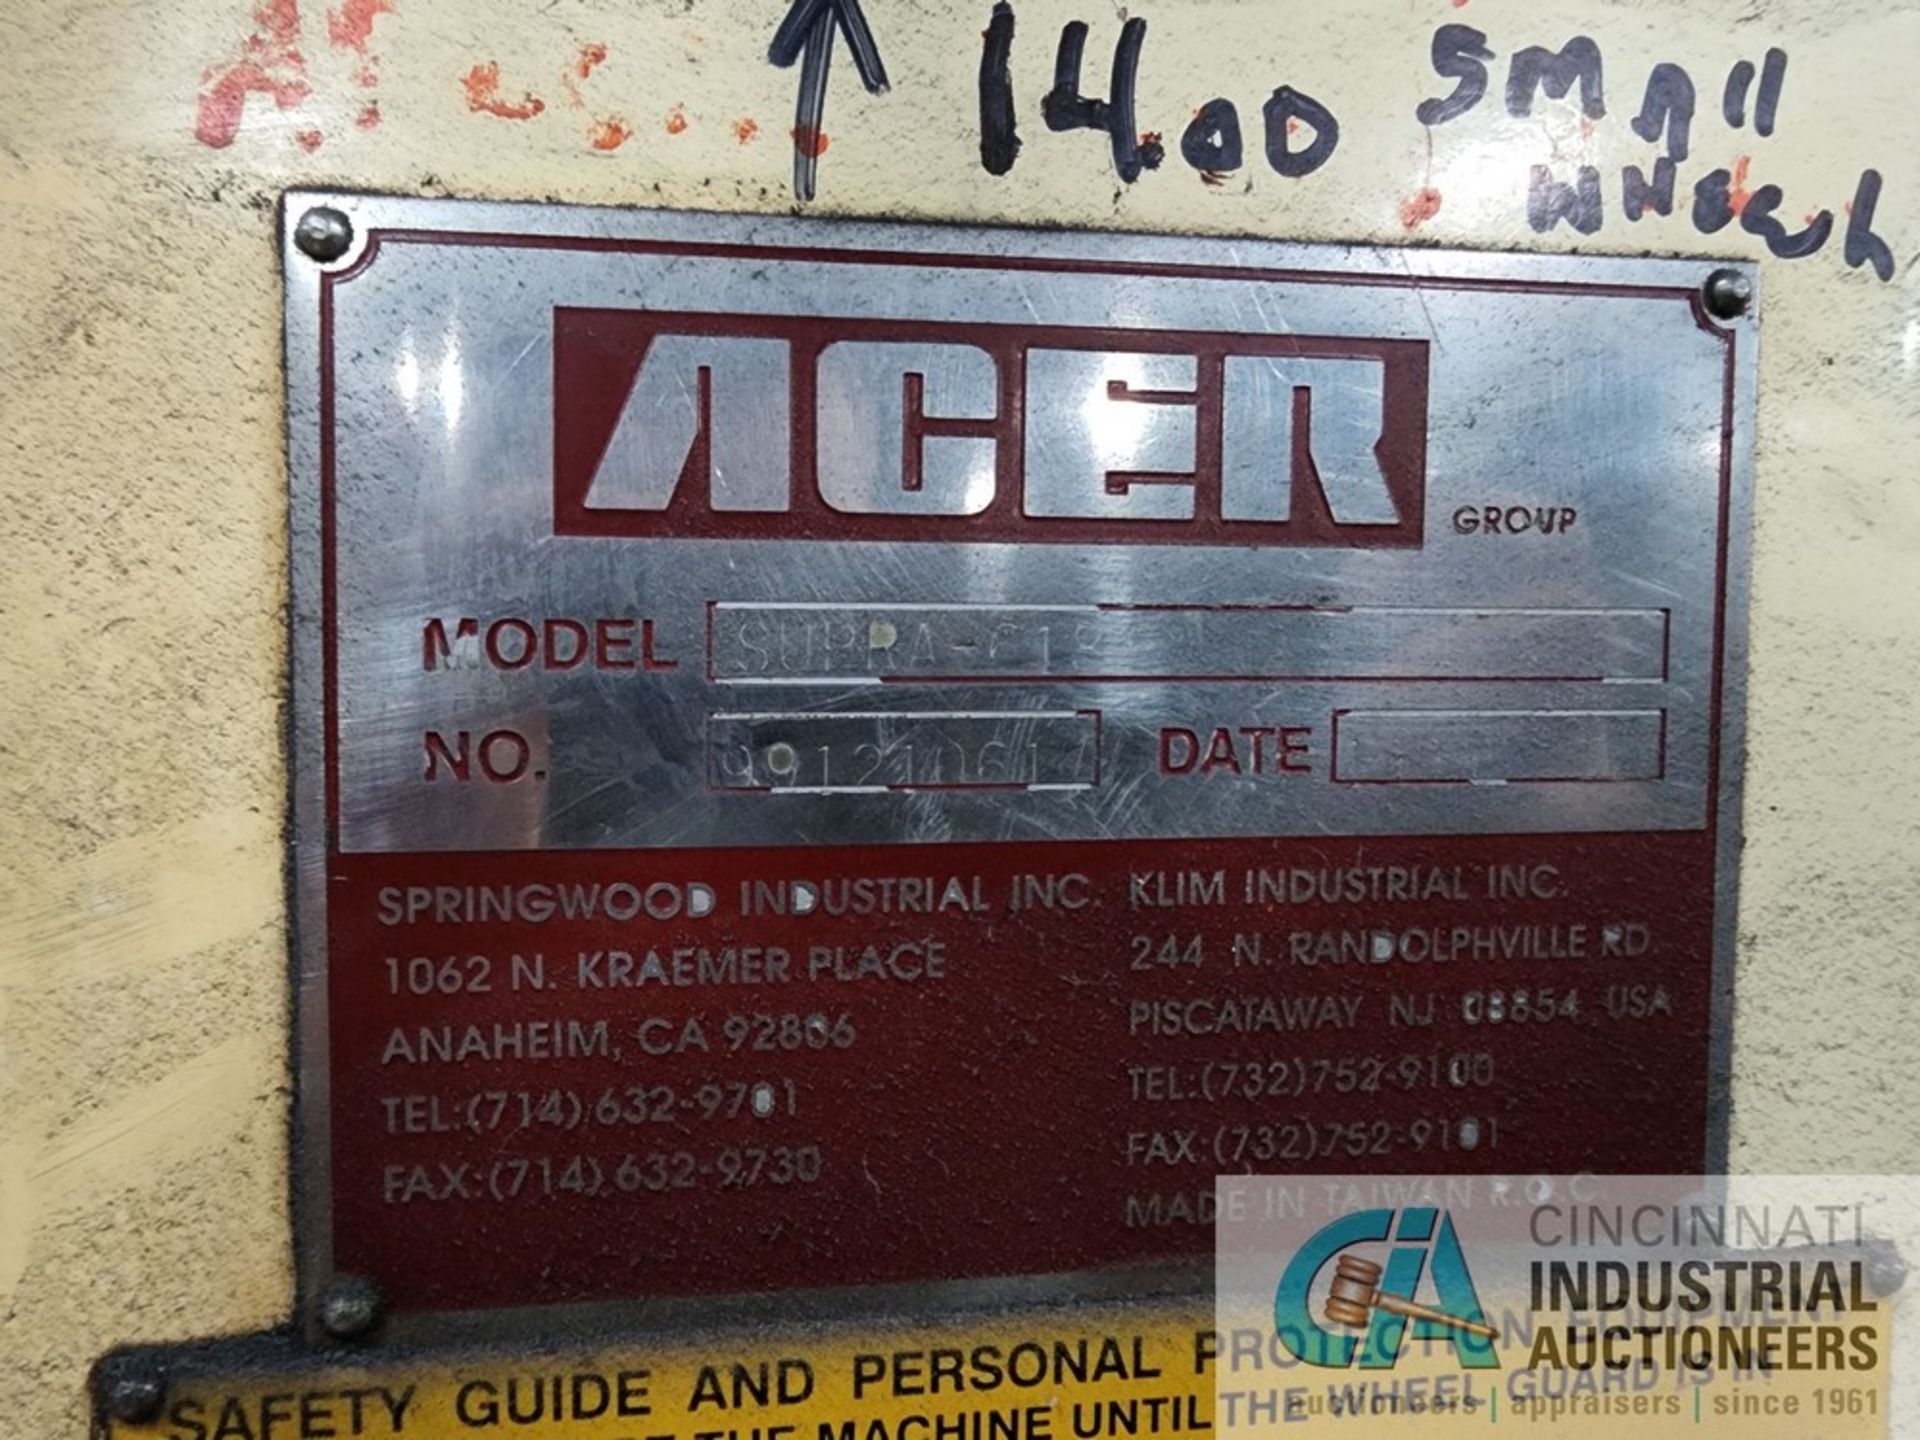 6" X 18" ACER MODEL SUPRA 618 SURFACE GRINDER; S/N 9912100 - Image 6 of 6